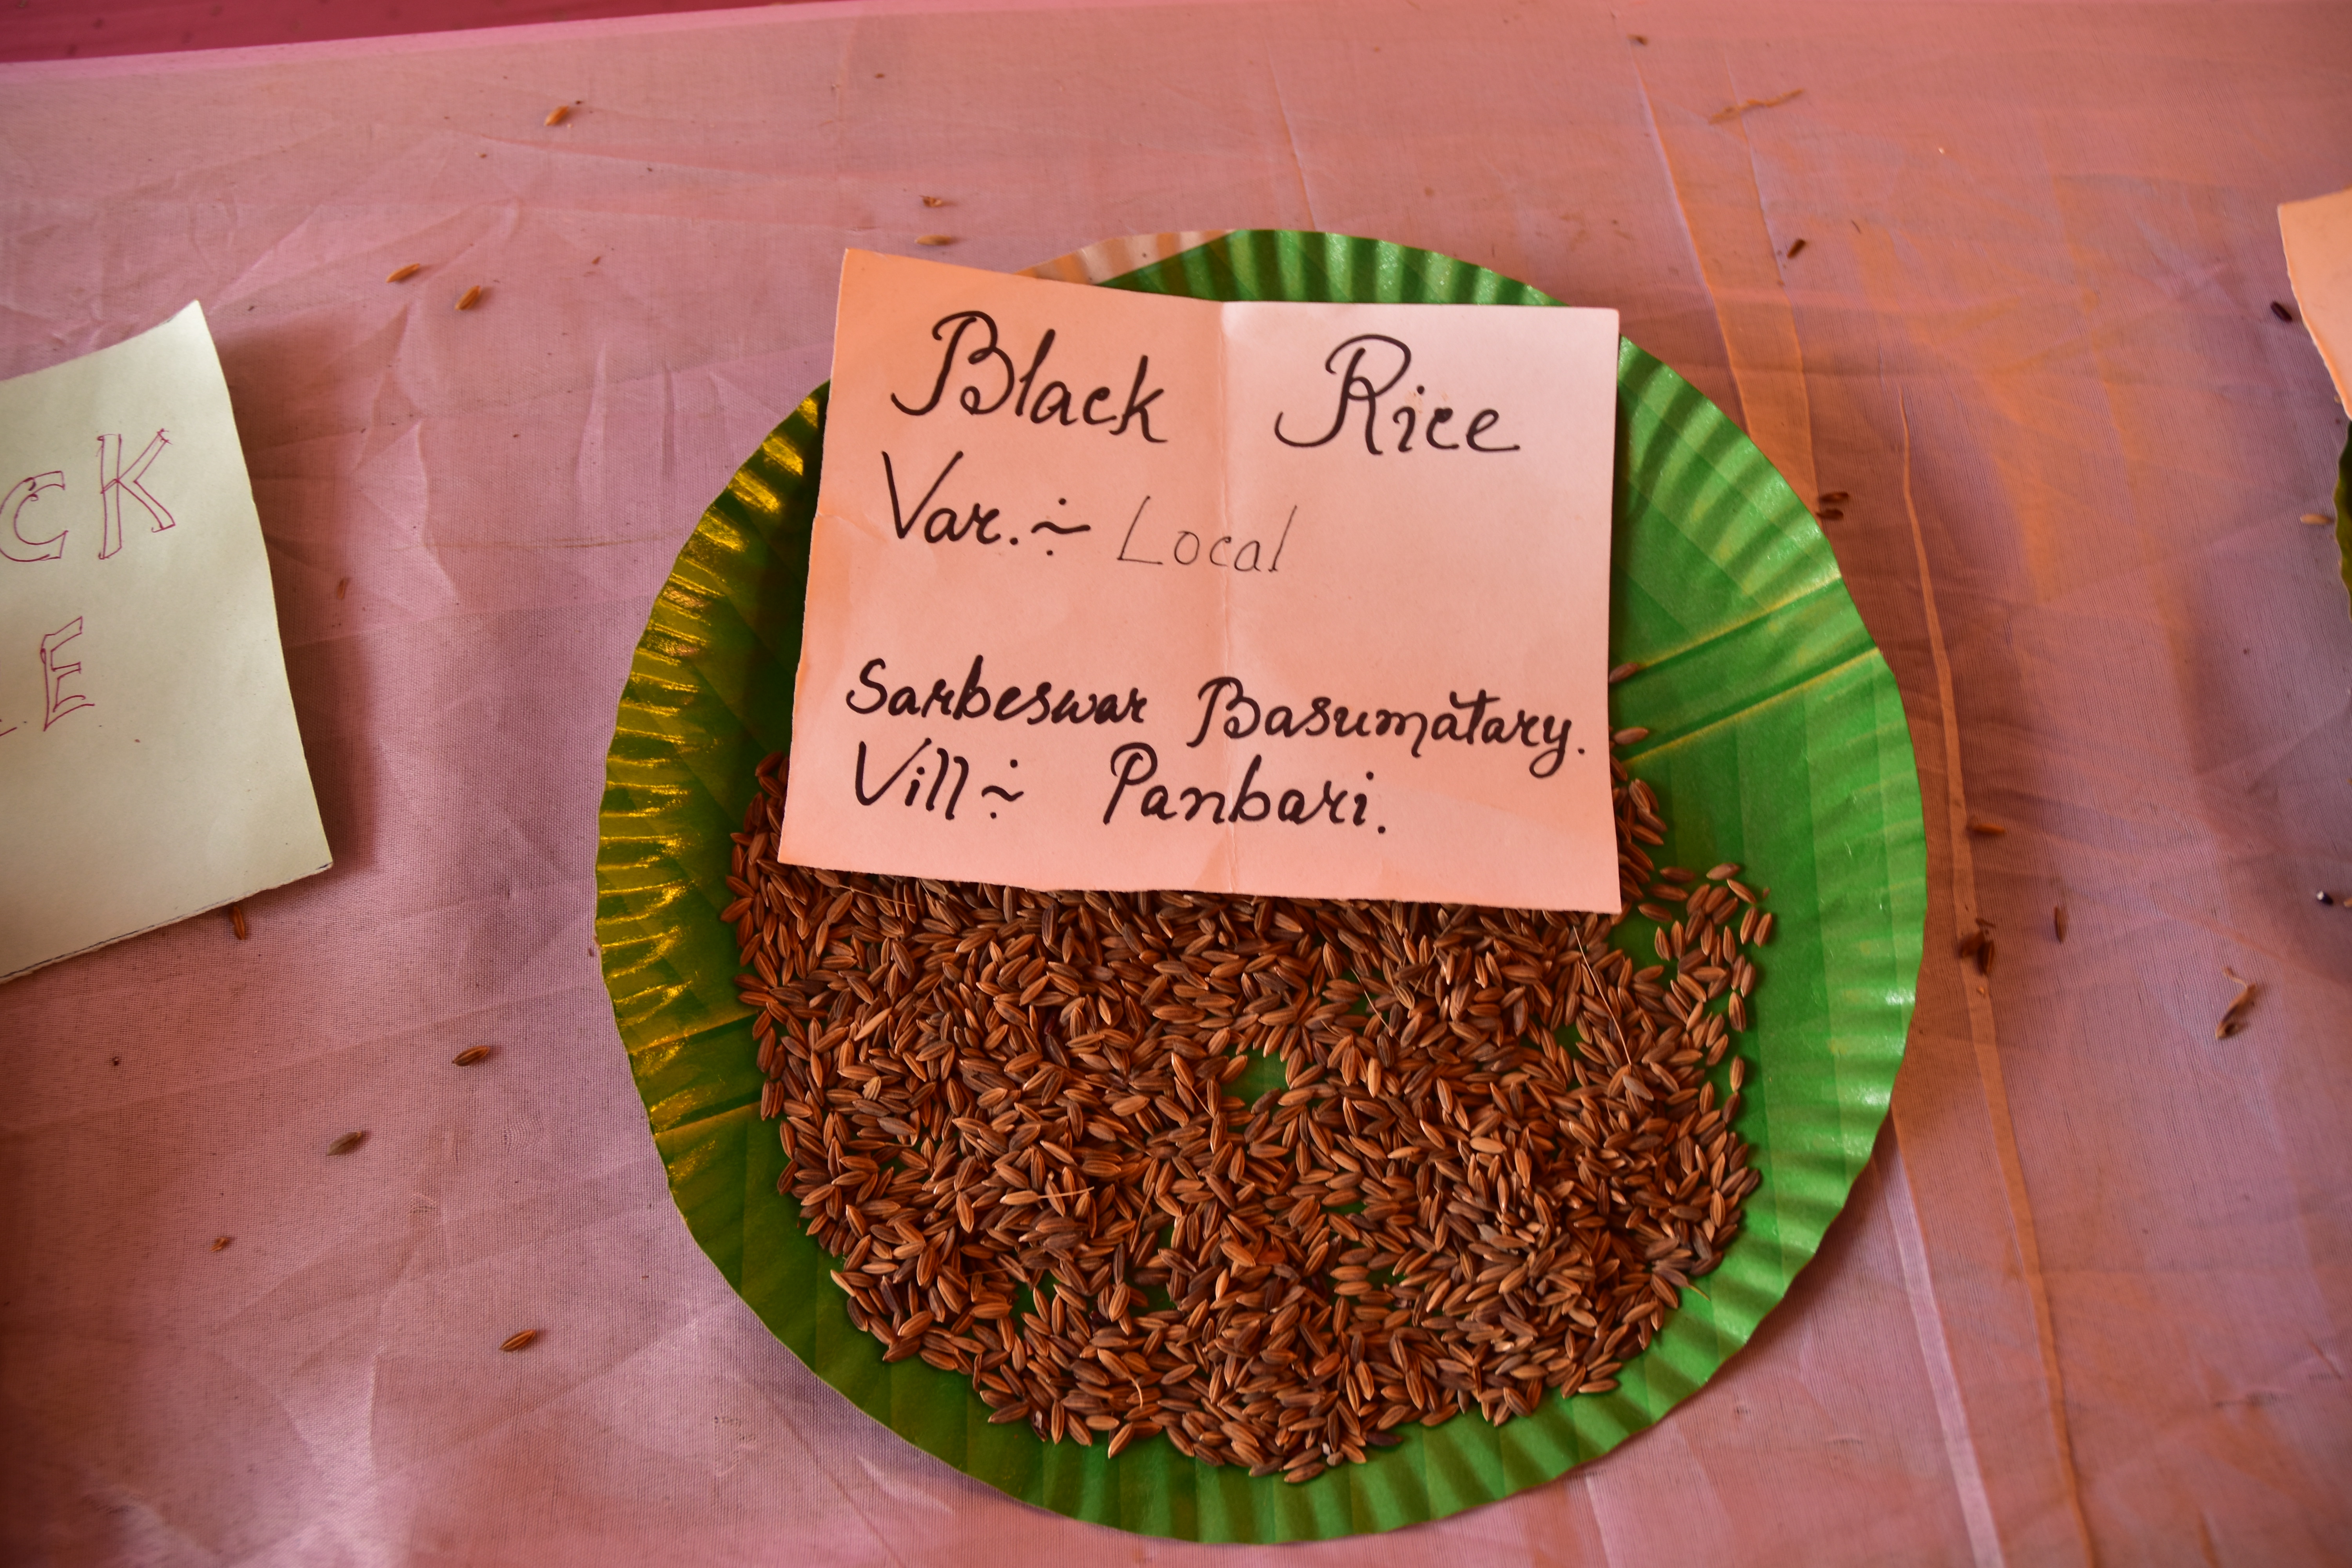 community knowledge, rice varieties, display